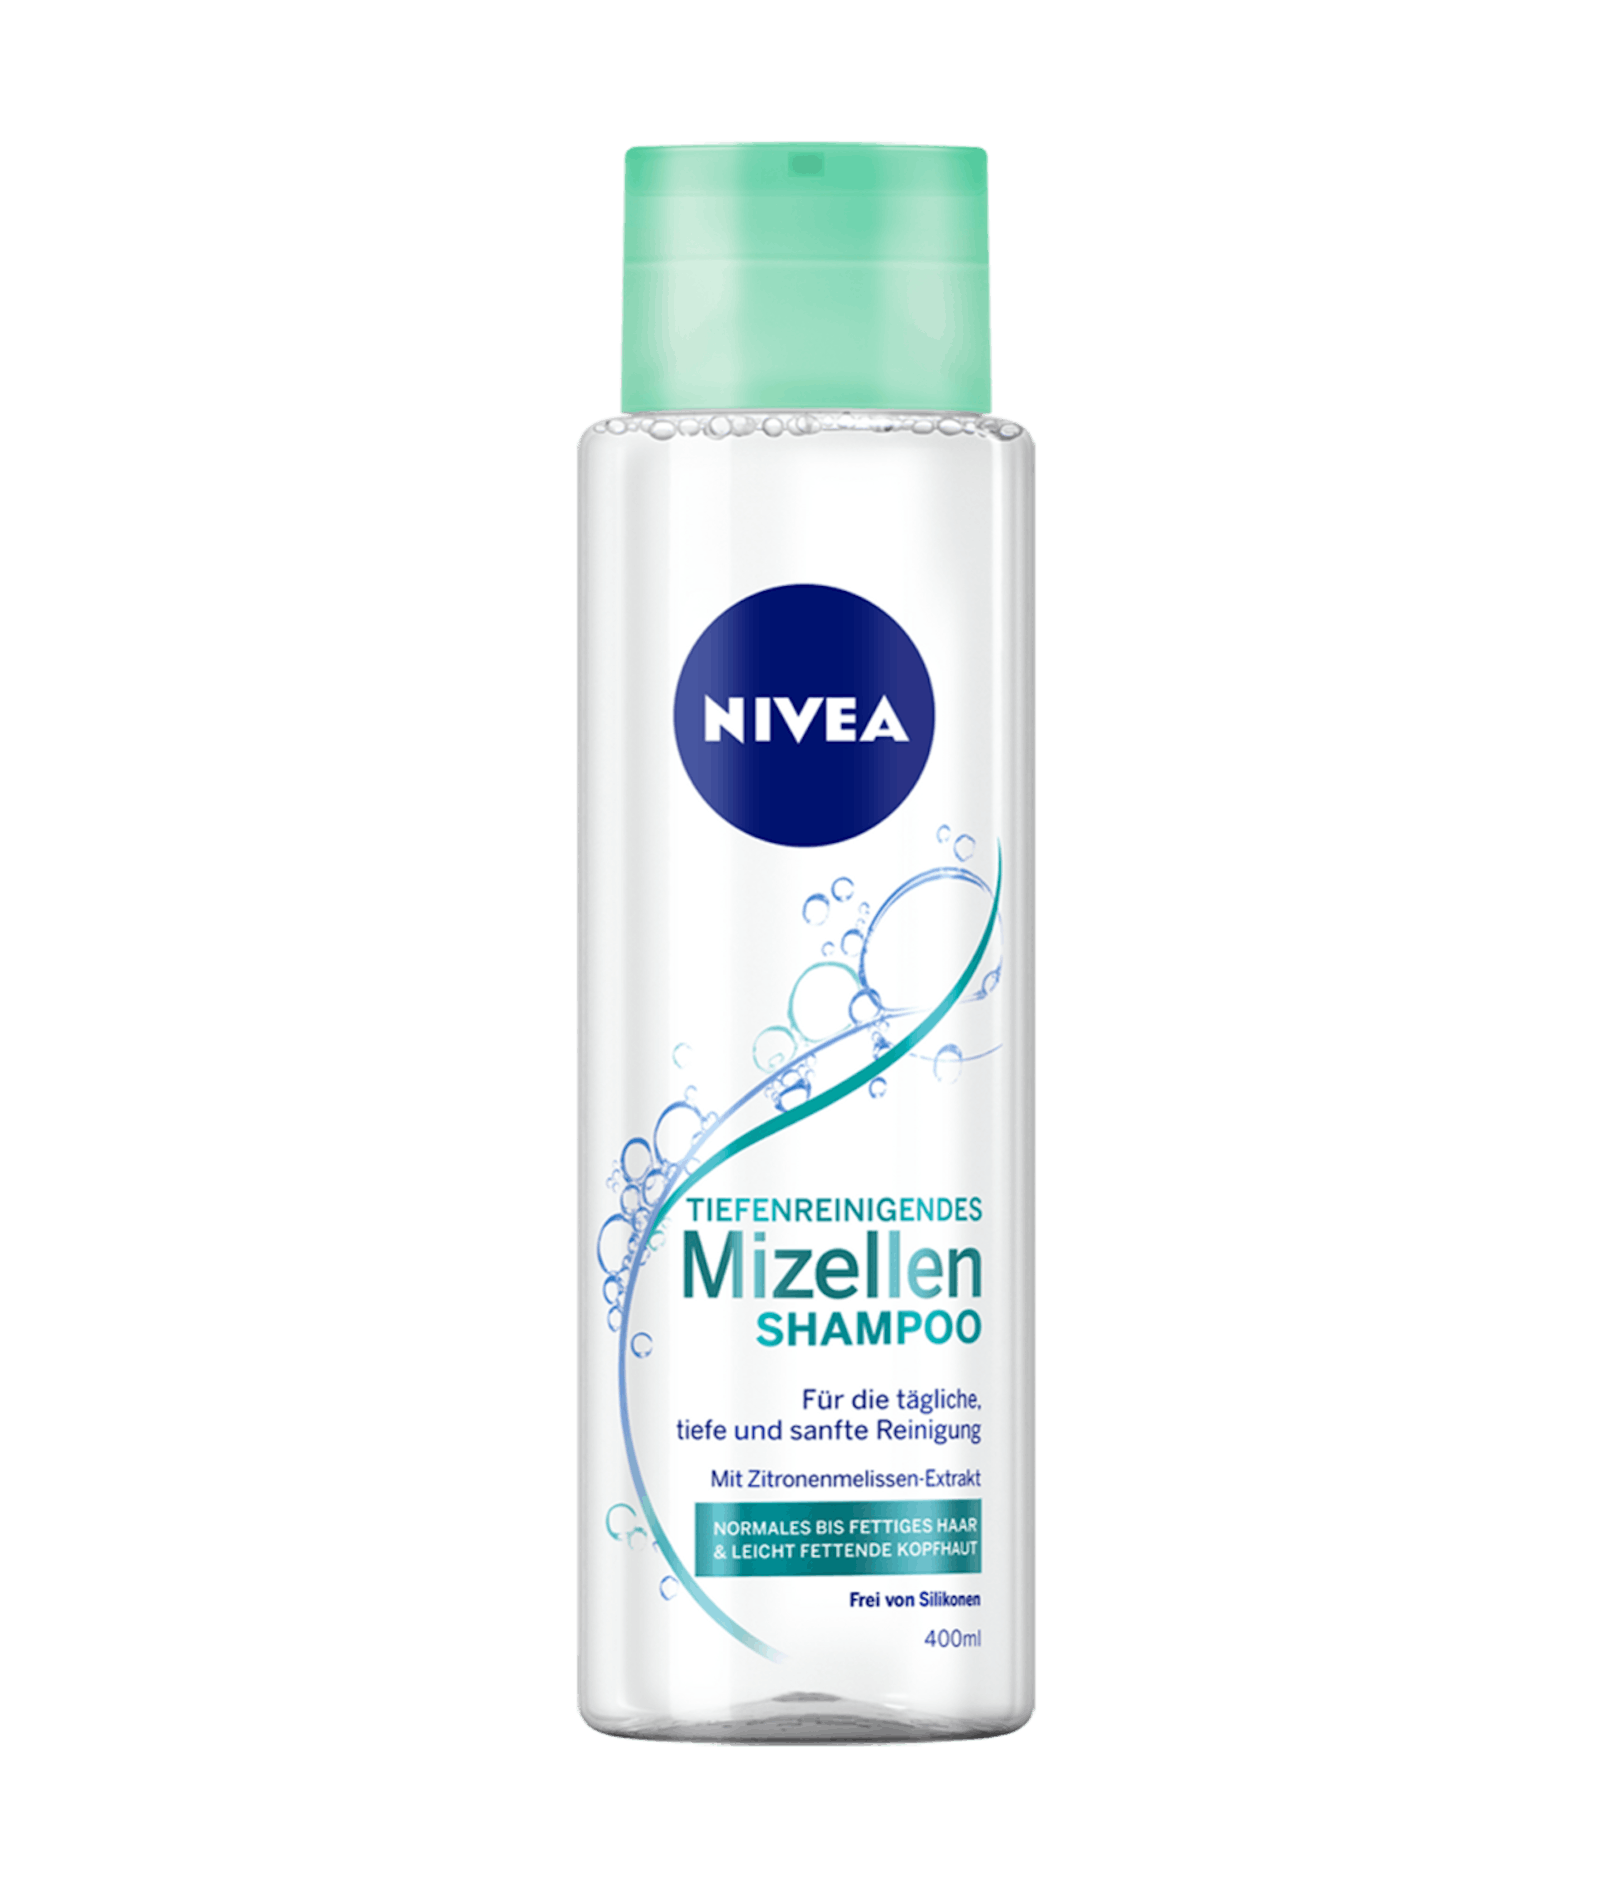 Die silikonfreie Mizellen-Formel enthält Zitronenmelissen-Extrakt, was die Kopfhaut beim Haarewaschen schont. Tiefenreinigendes Mizellen Shampoo von Nivea.